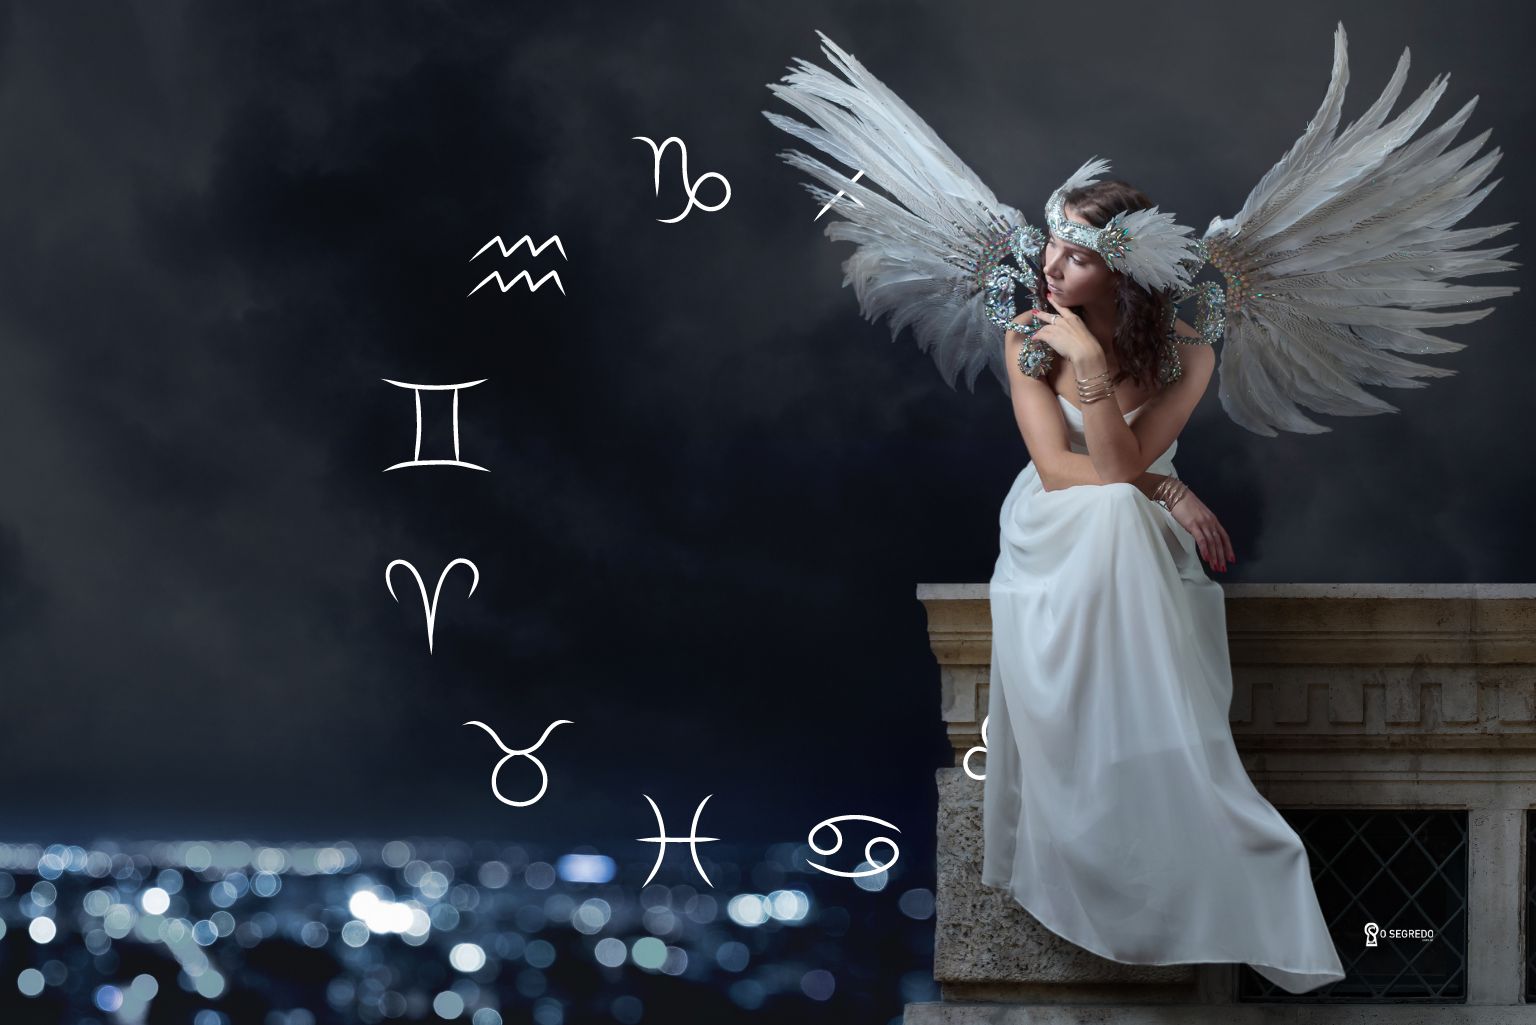 Horóscopo dos anjos: mensagens celestiais para todos os signos do zodíaco